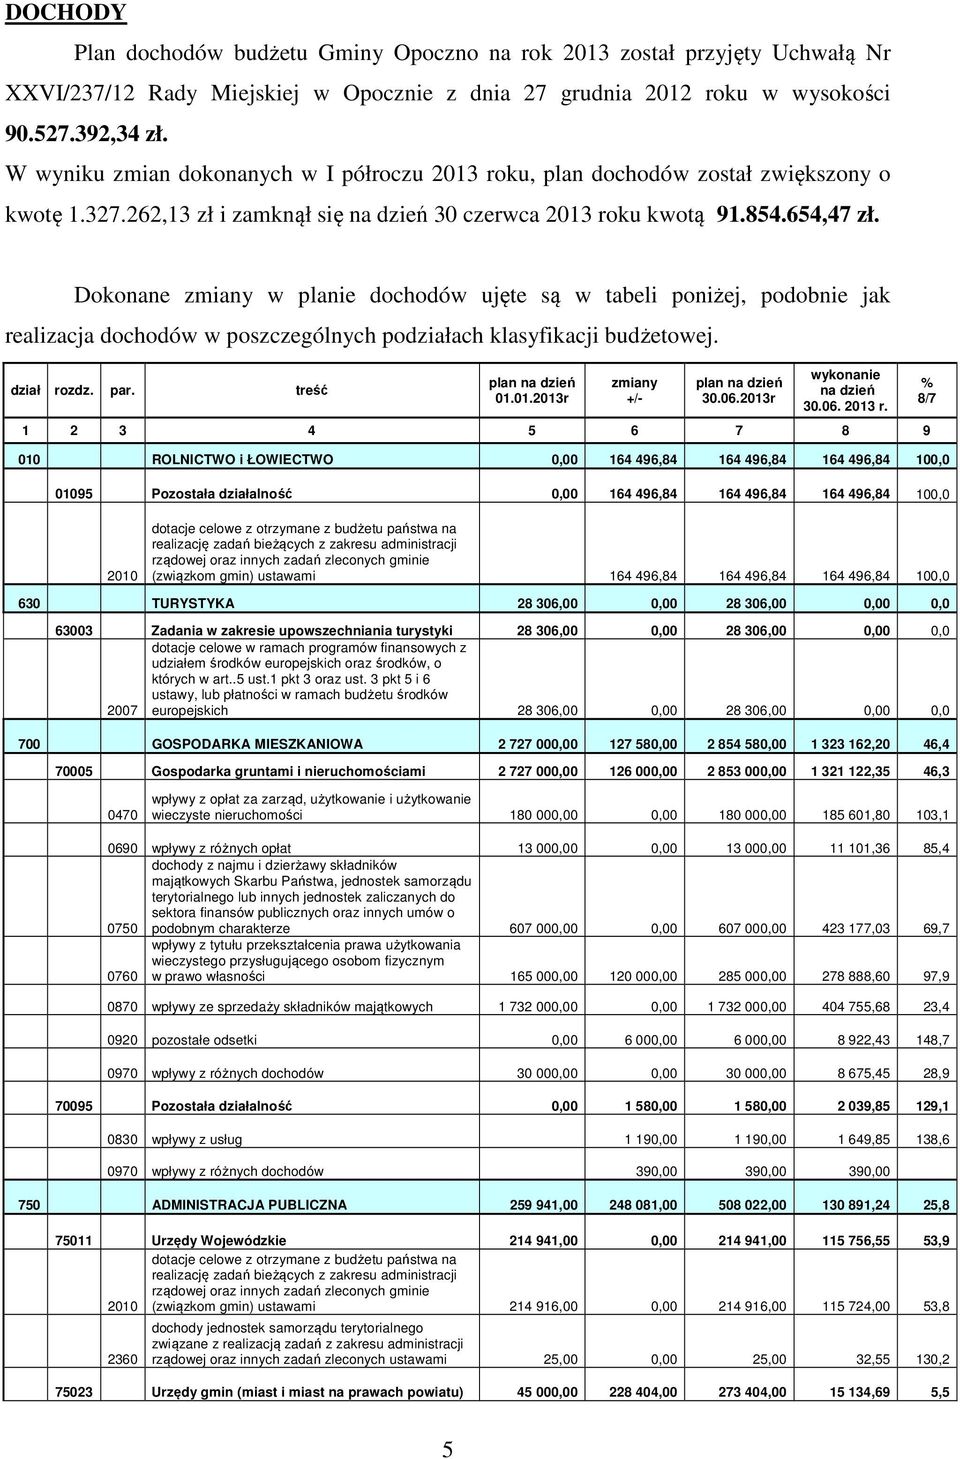 Dokonane zmiany w planie dochodów ujęte są w tabeli poniżej, podobnie jak realizacja dochodów w poszczególnych podziałach klasyfikacji budżetowej. dział rozdz. par. treść plan na dzień 01.